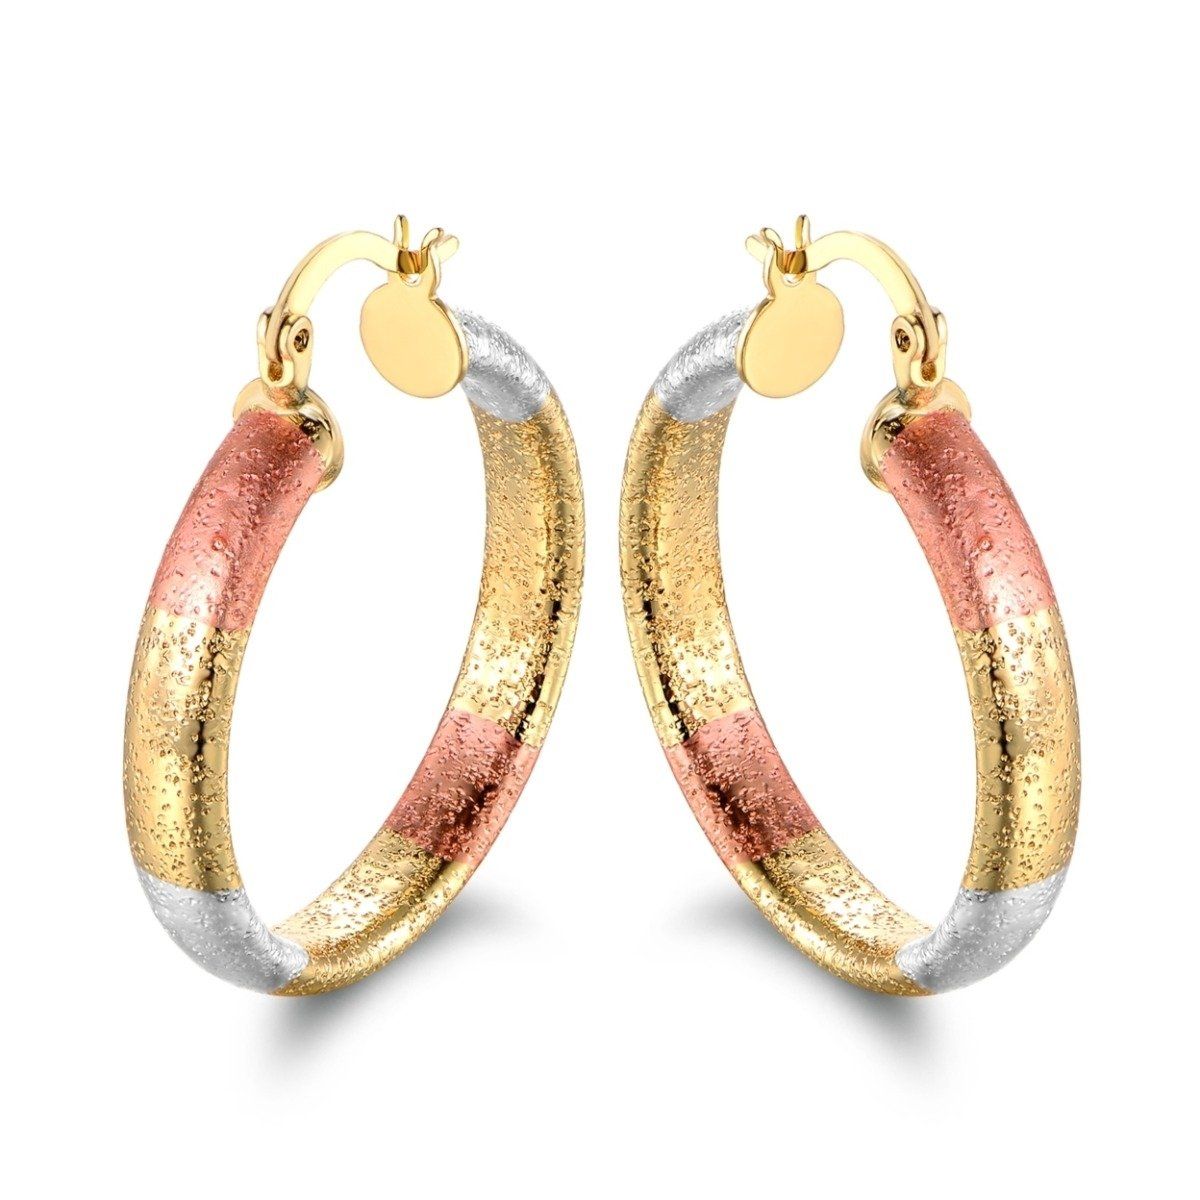 Multi Gold Hoop Earrings - Assorted Styles